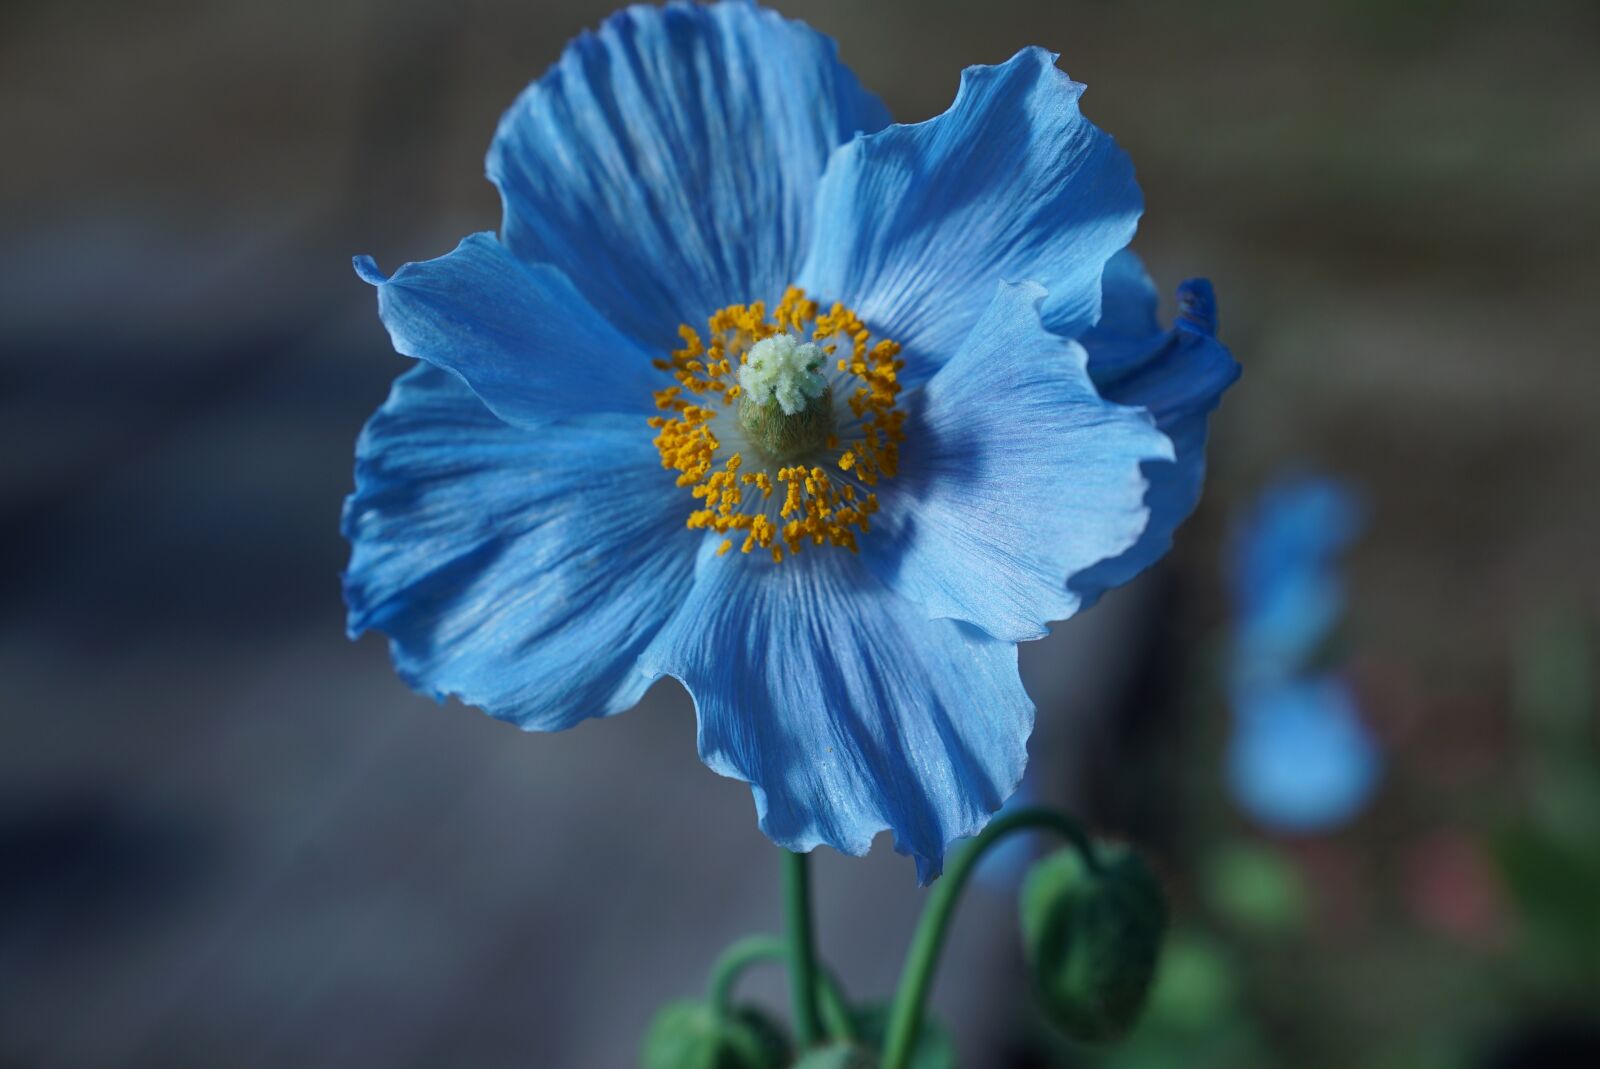 Sony a7S sample photo. Hokkaido, himilayan blue poppy photography